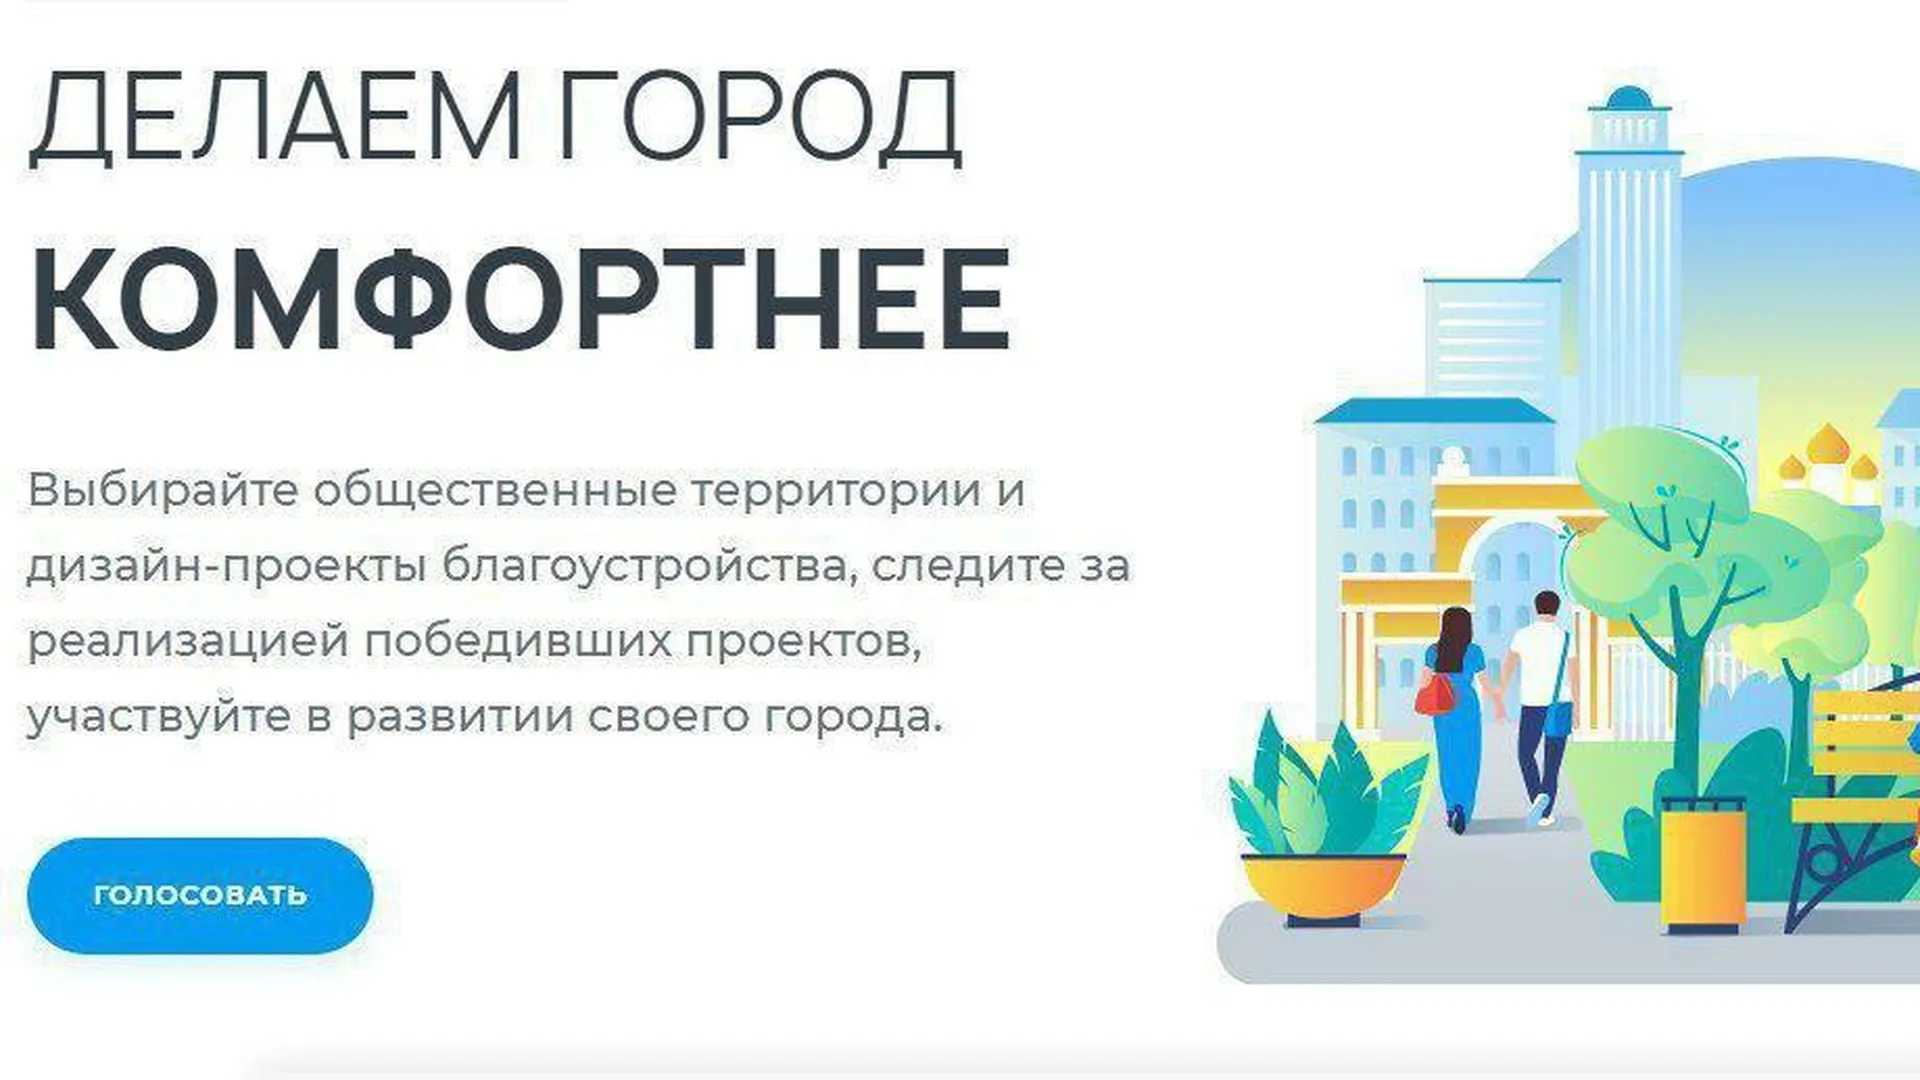 Жители Серпухова смогут принять участие в голосовании по благоустройству до 30 апреля